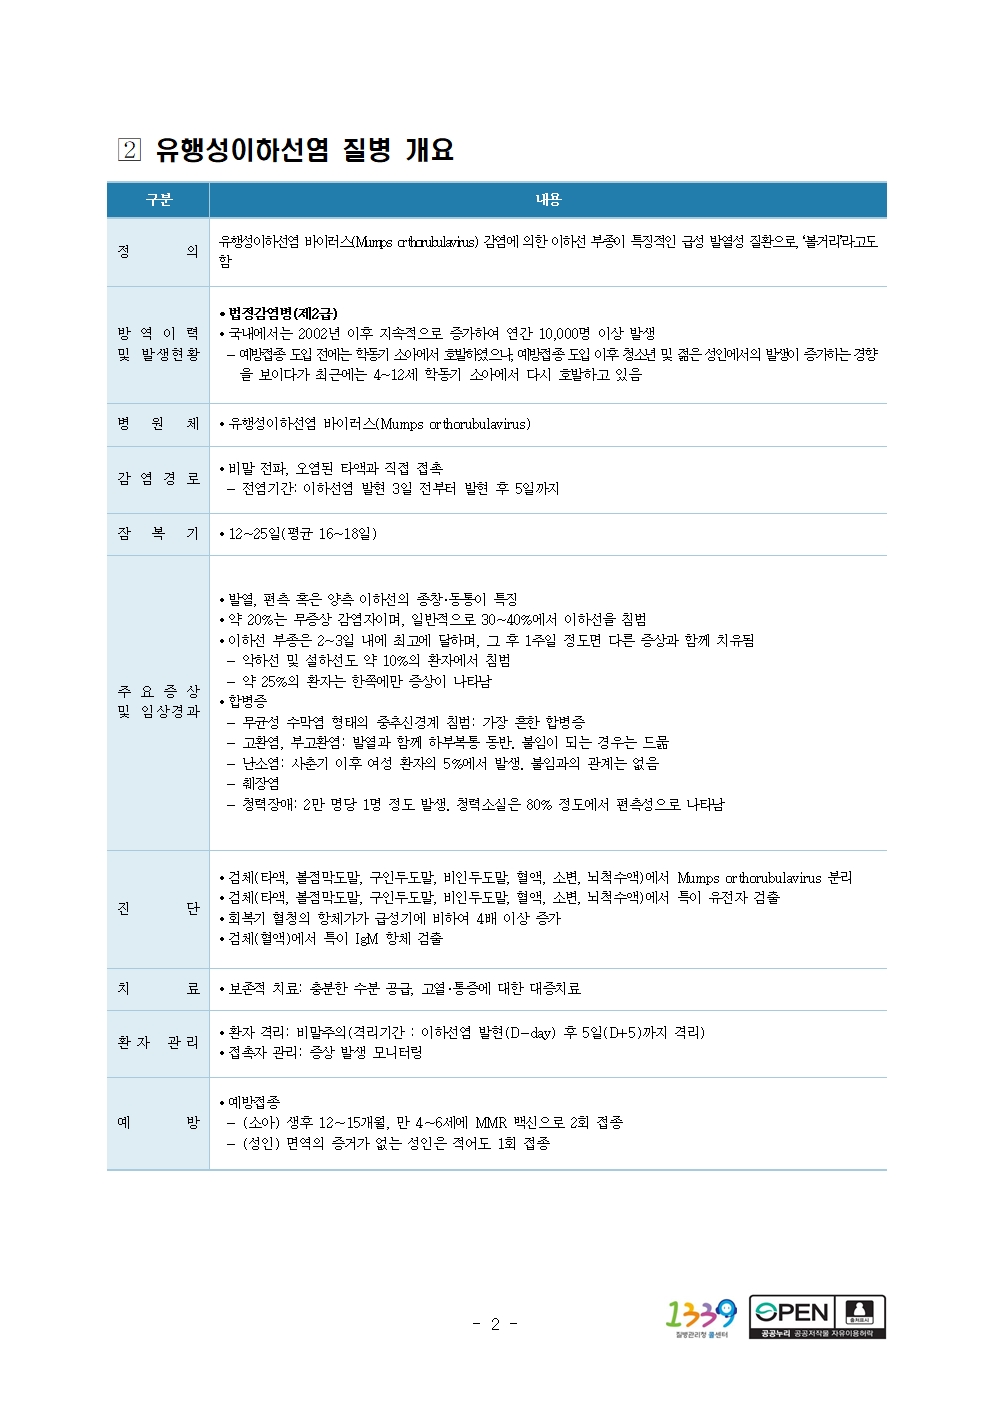 전북특별자치도교육청 문예체건강과_수두 및 유행성이하선염 질병 개요002